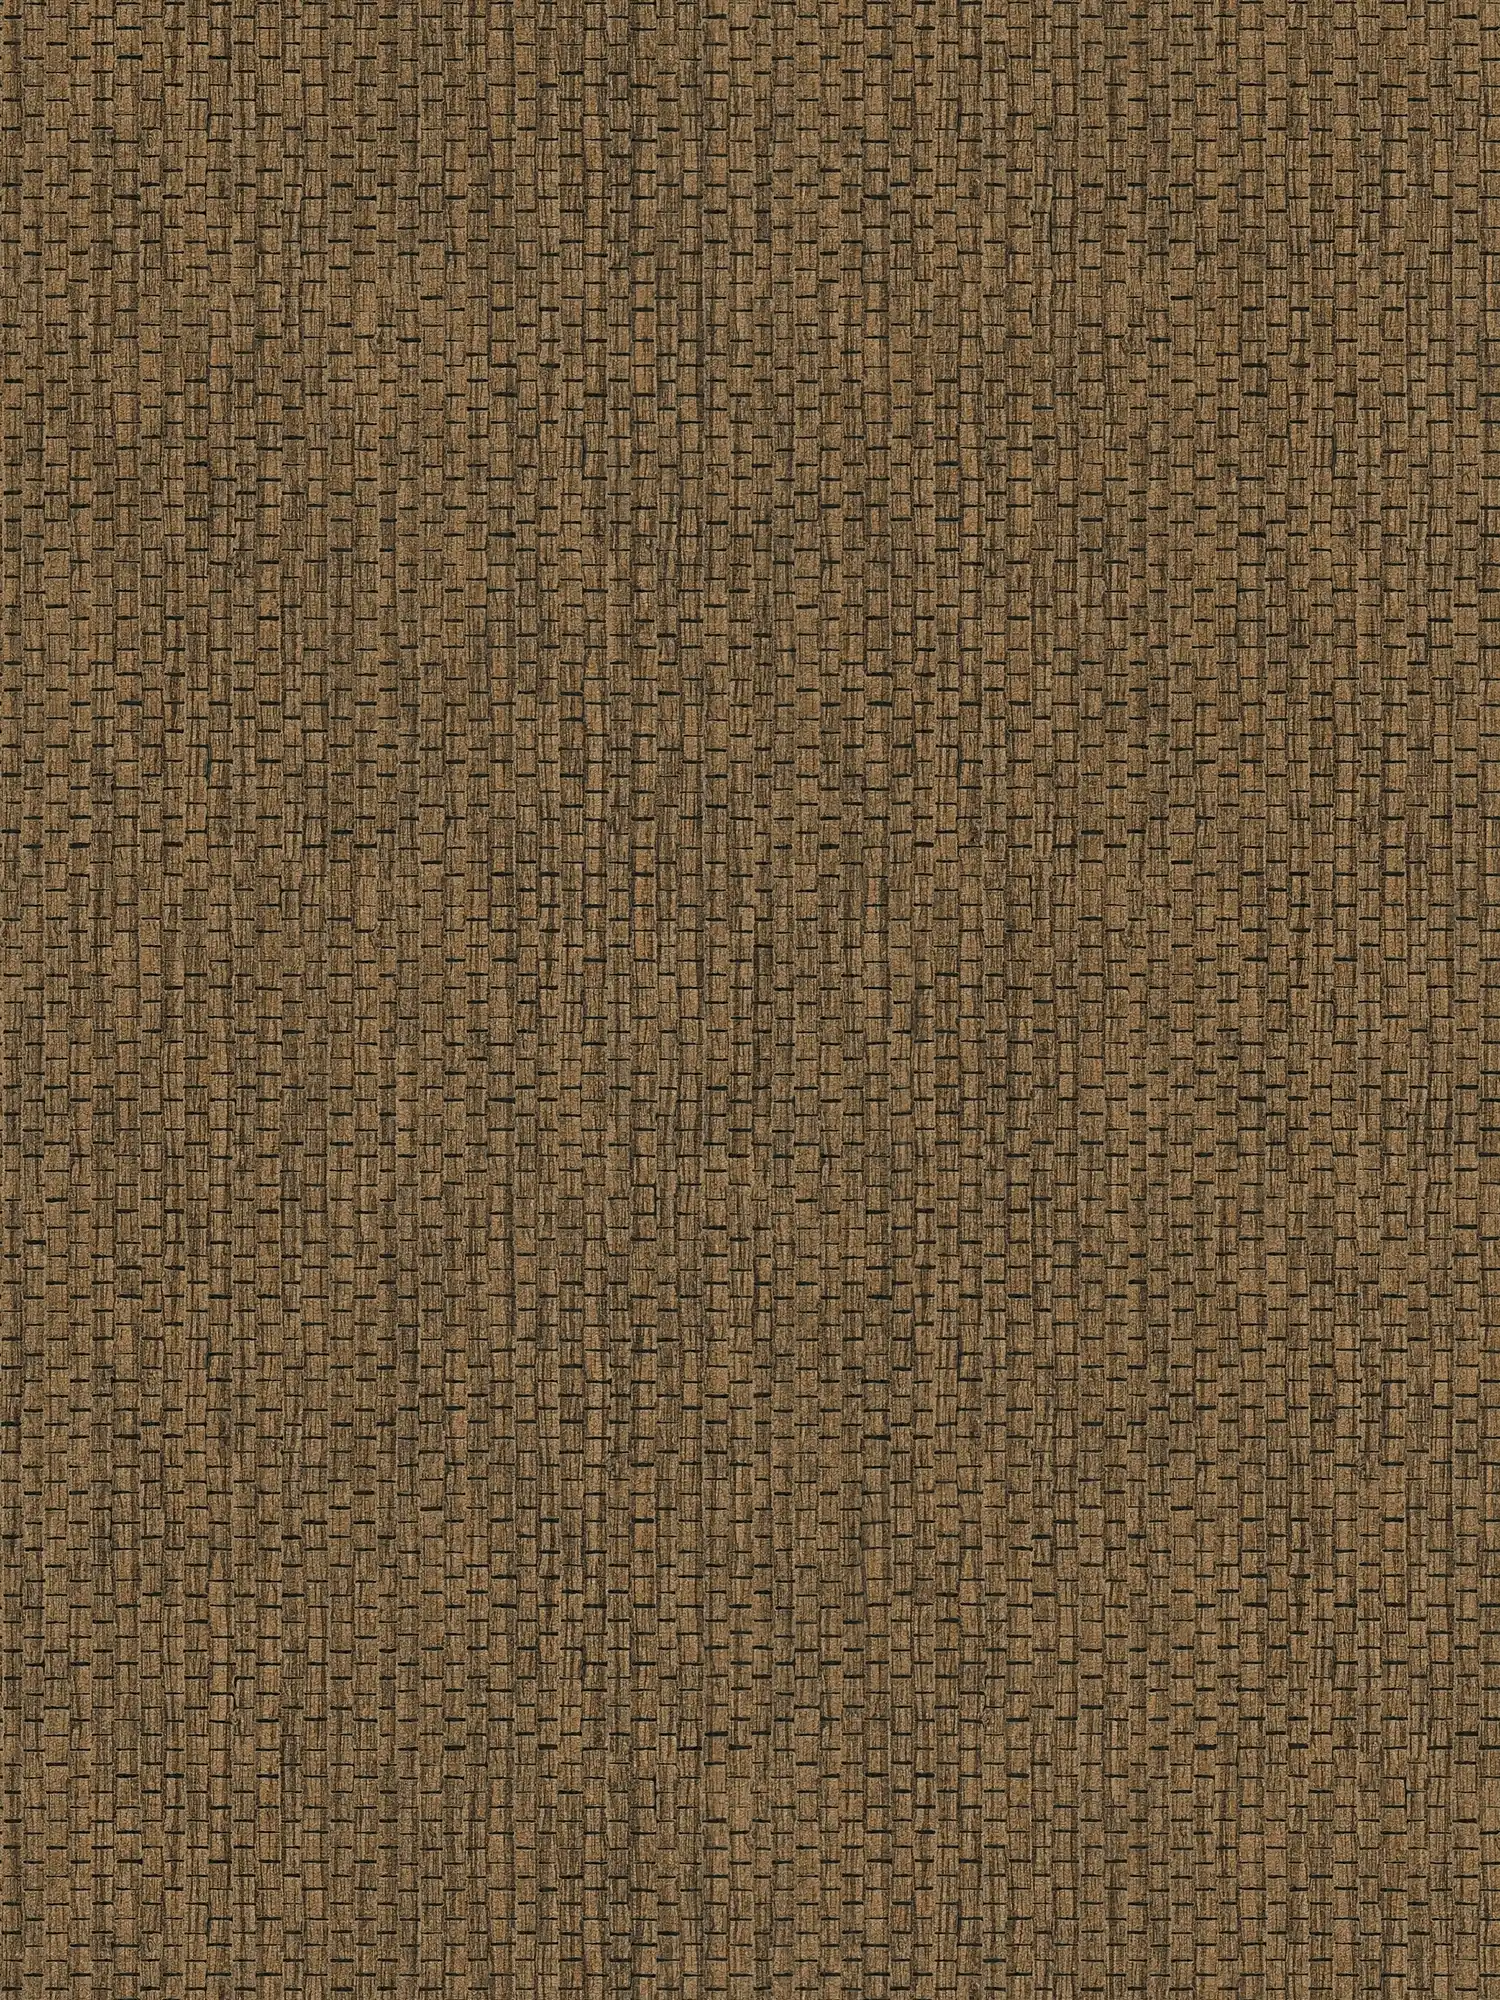 Behang met raffia natuurlijke stof patroon - Bruin
